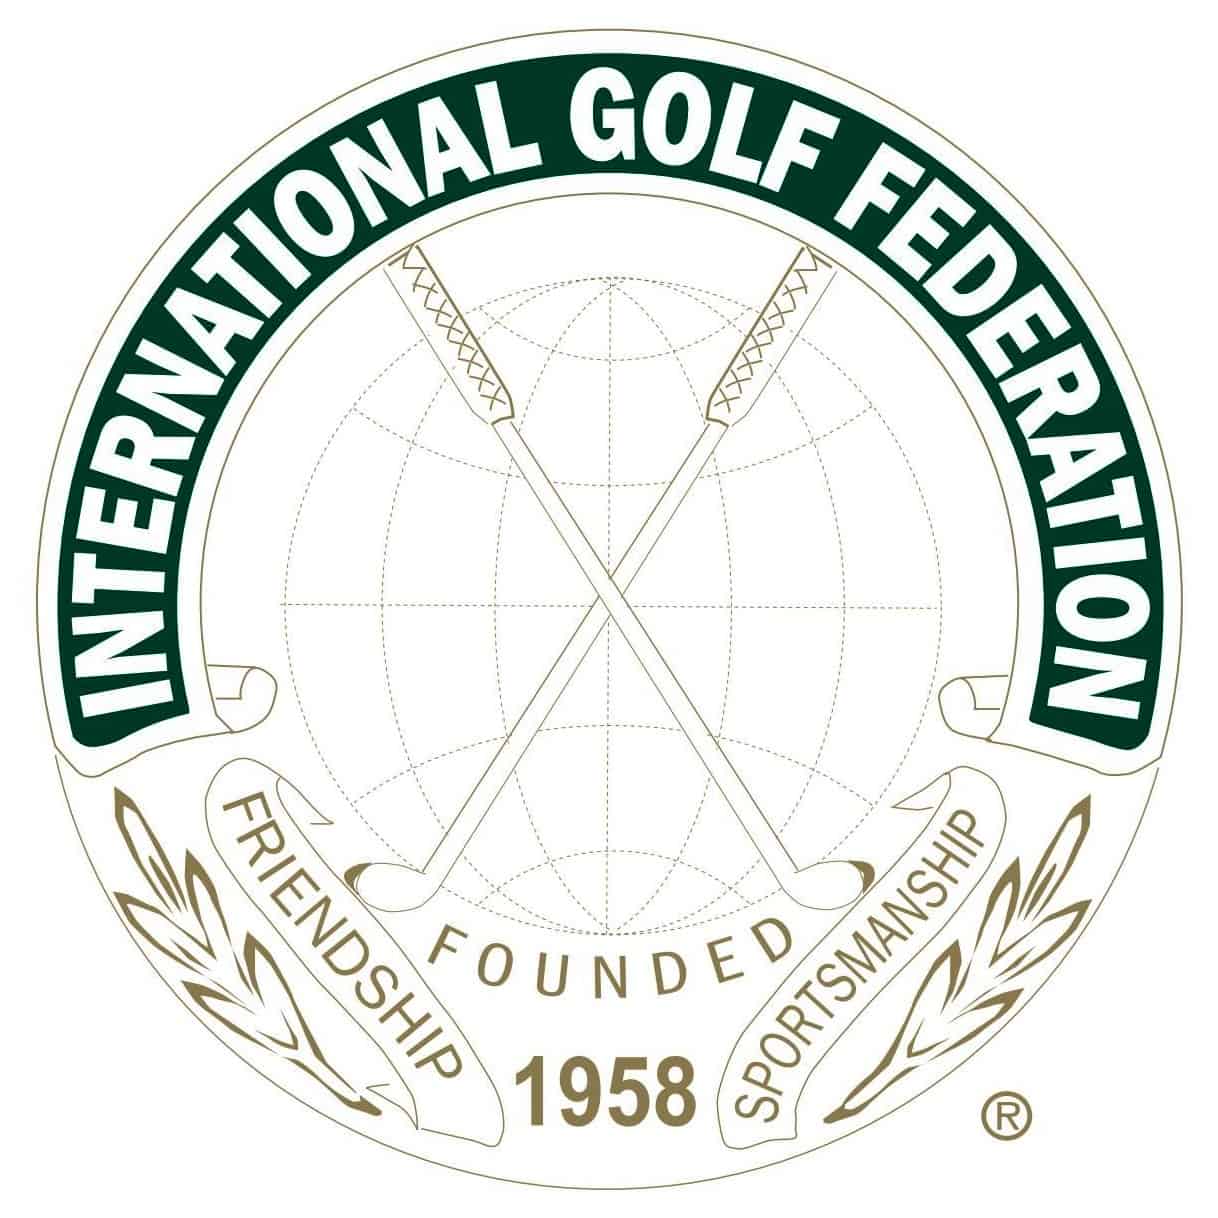 IGF International Golf Federation logo